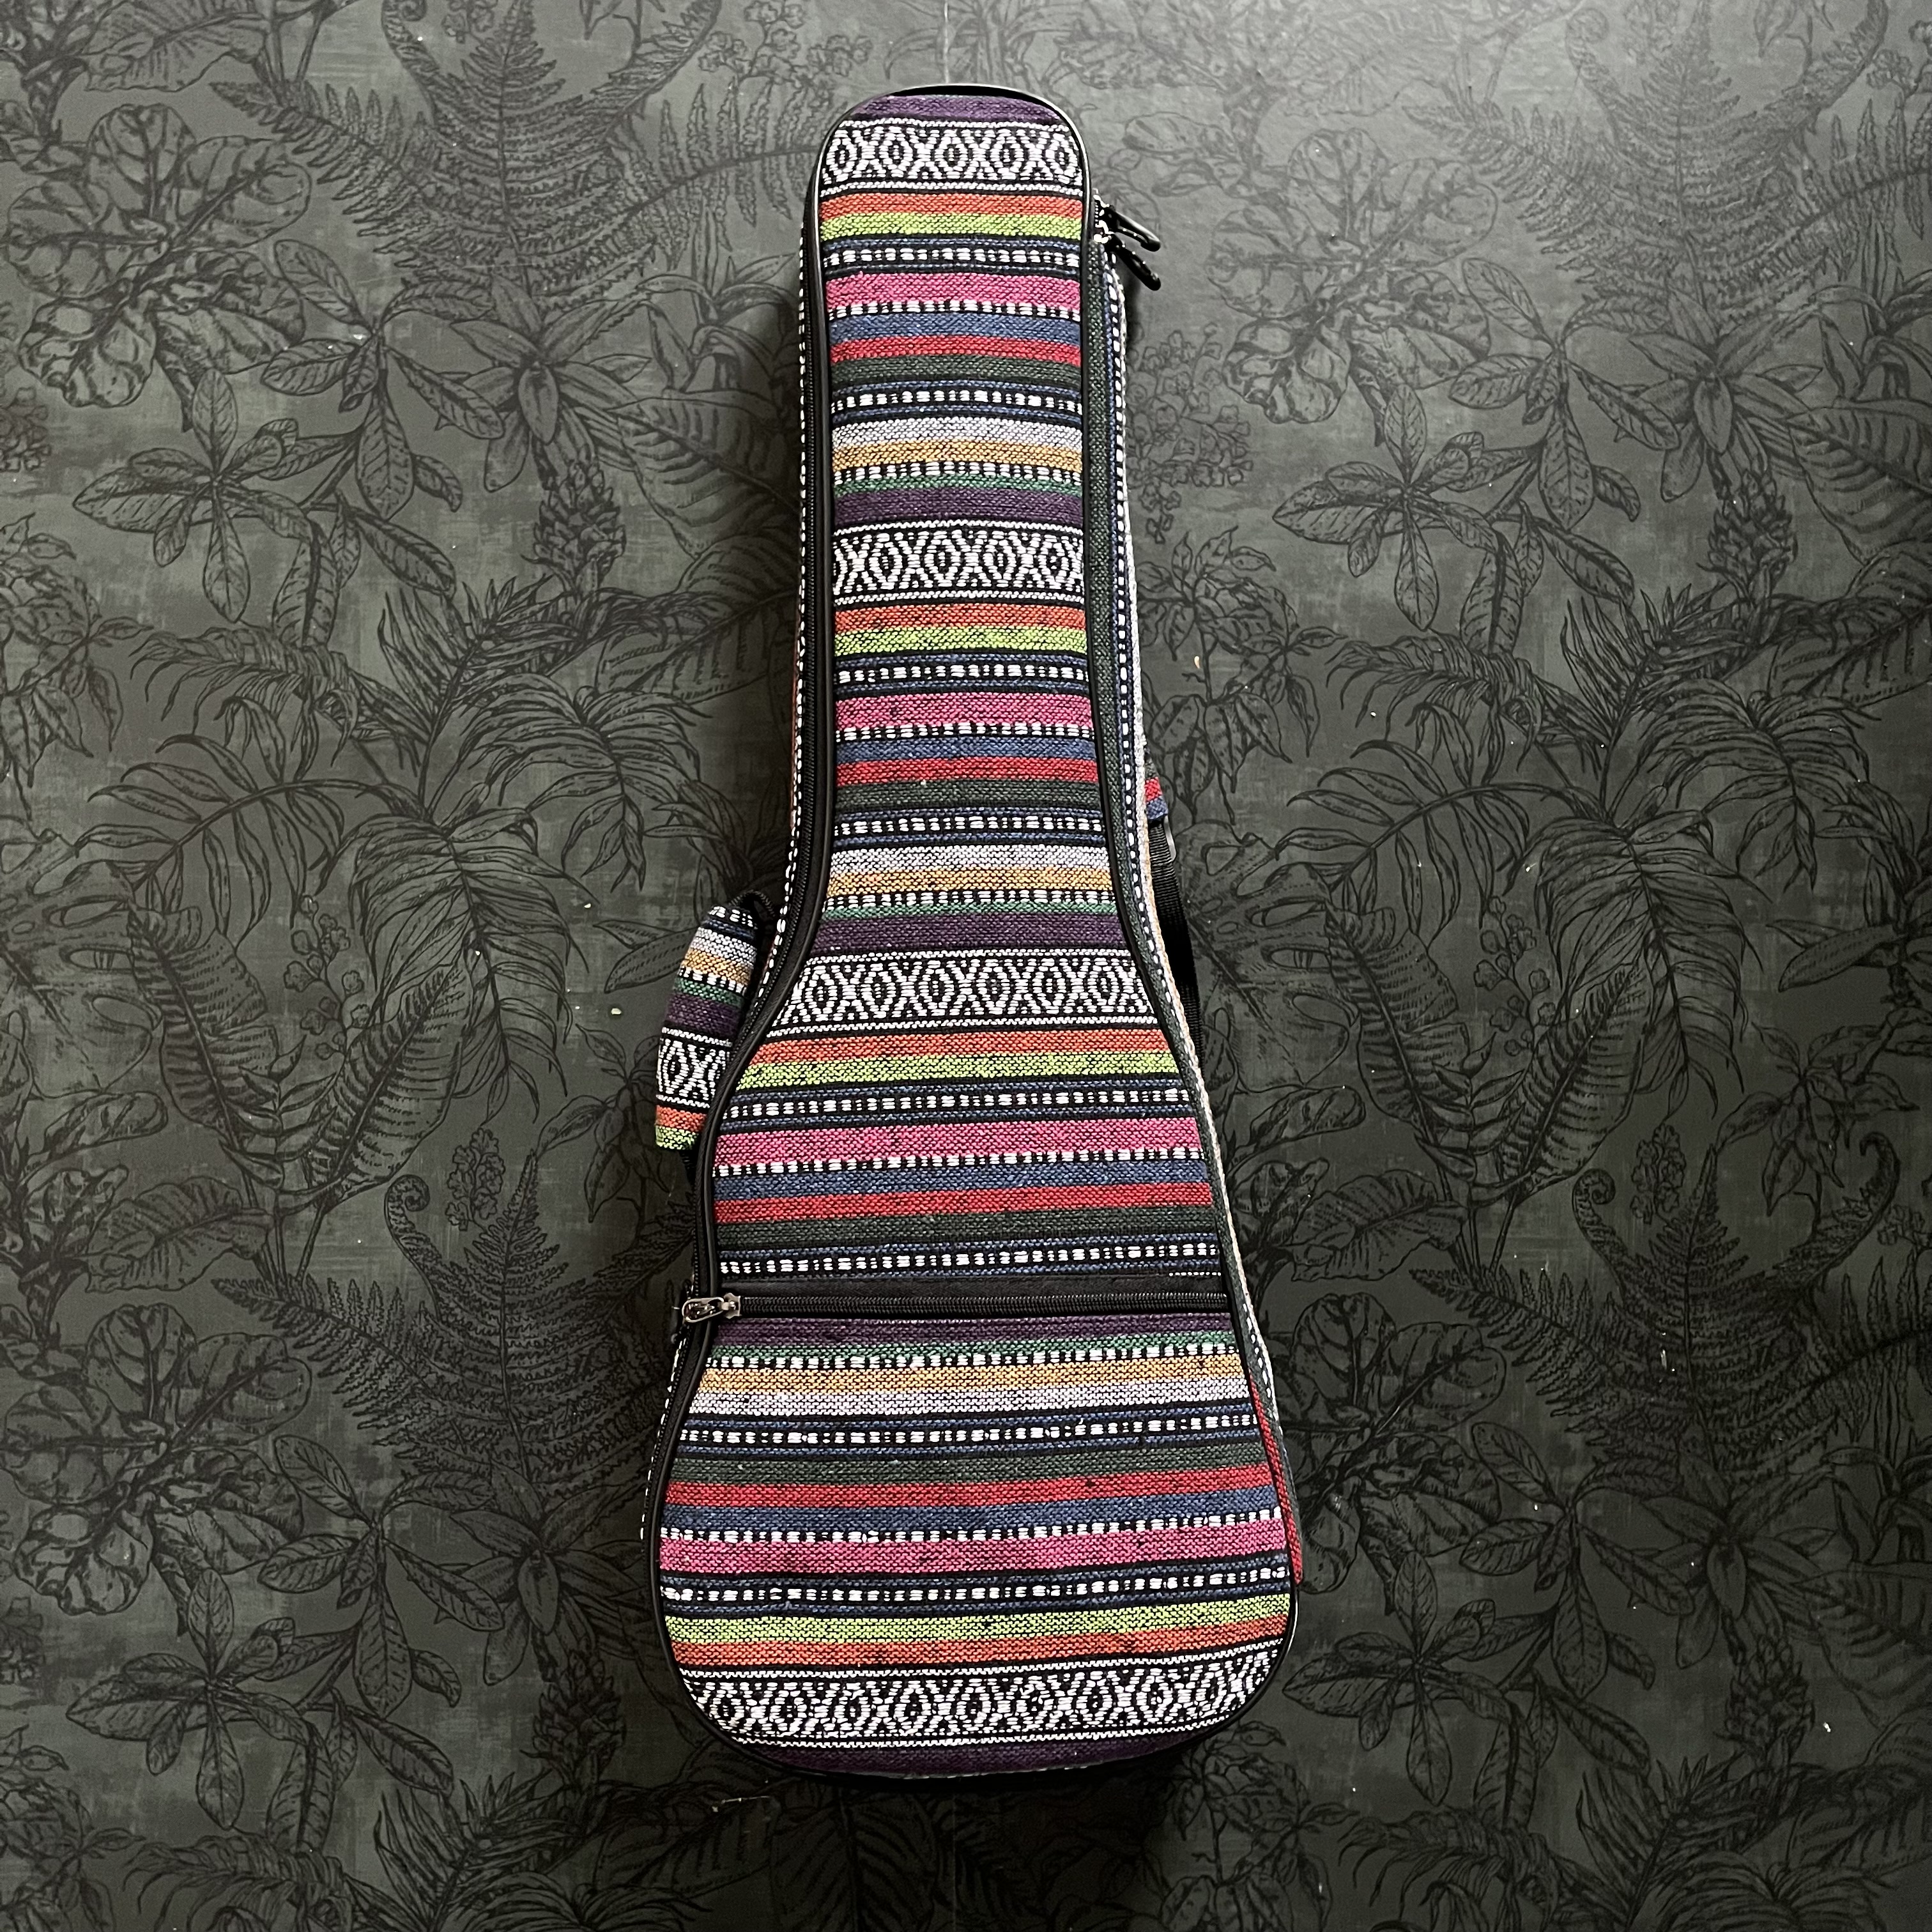 Kleurrijke ukuleletas (tenor)